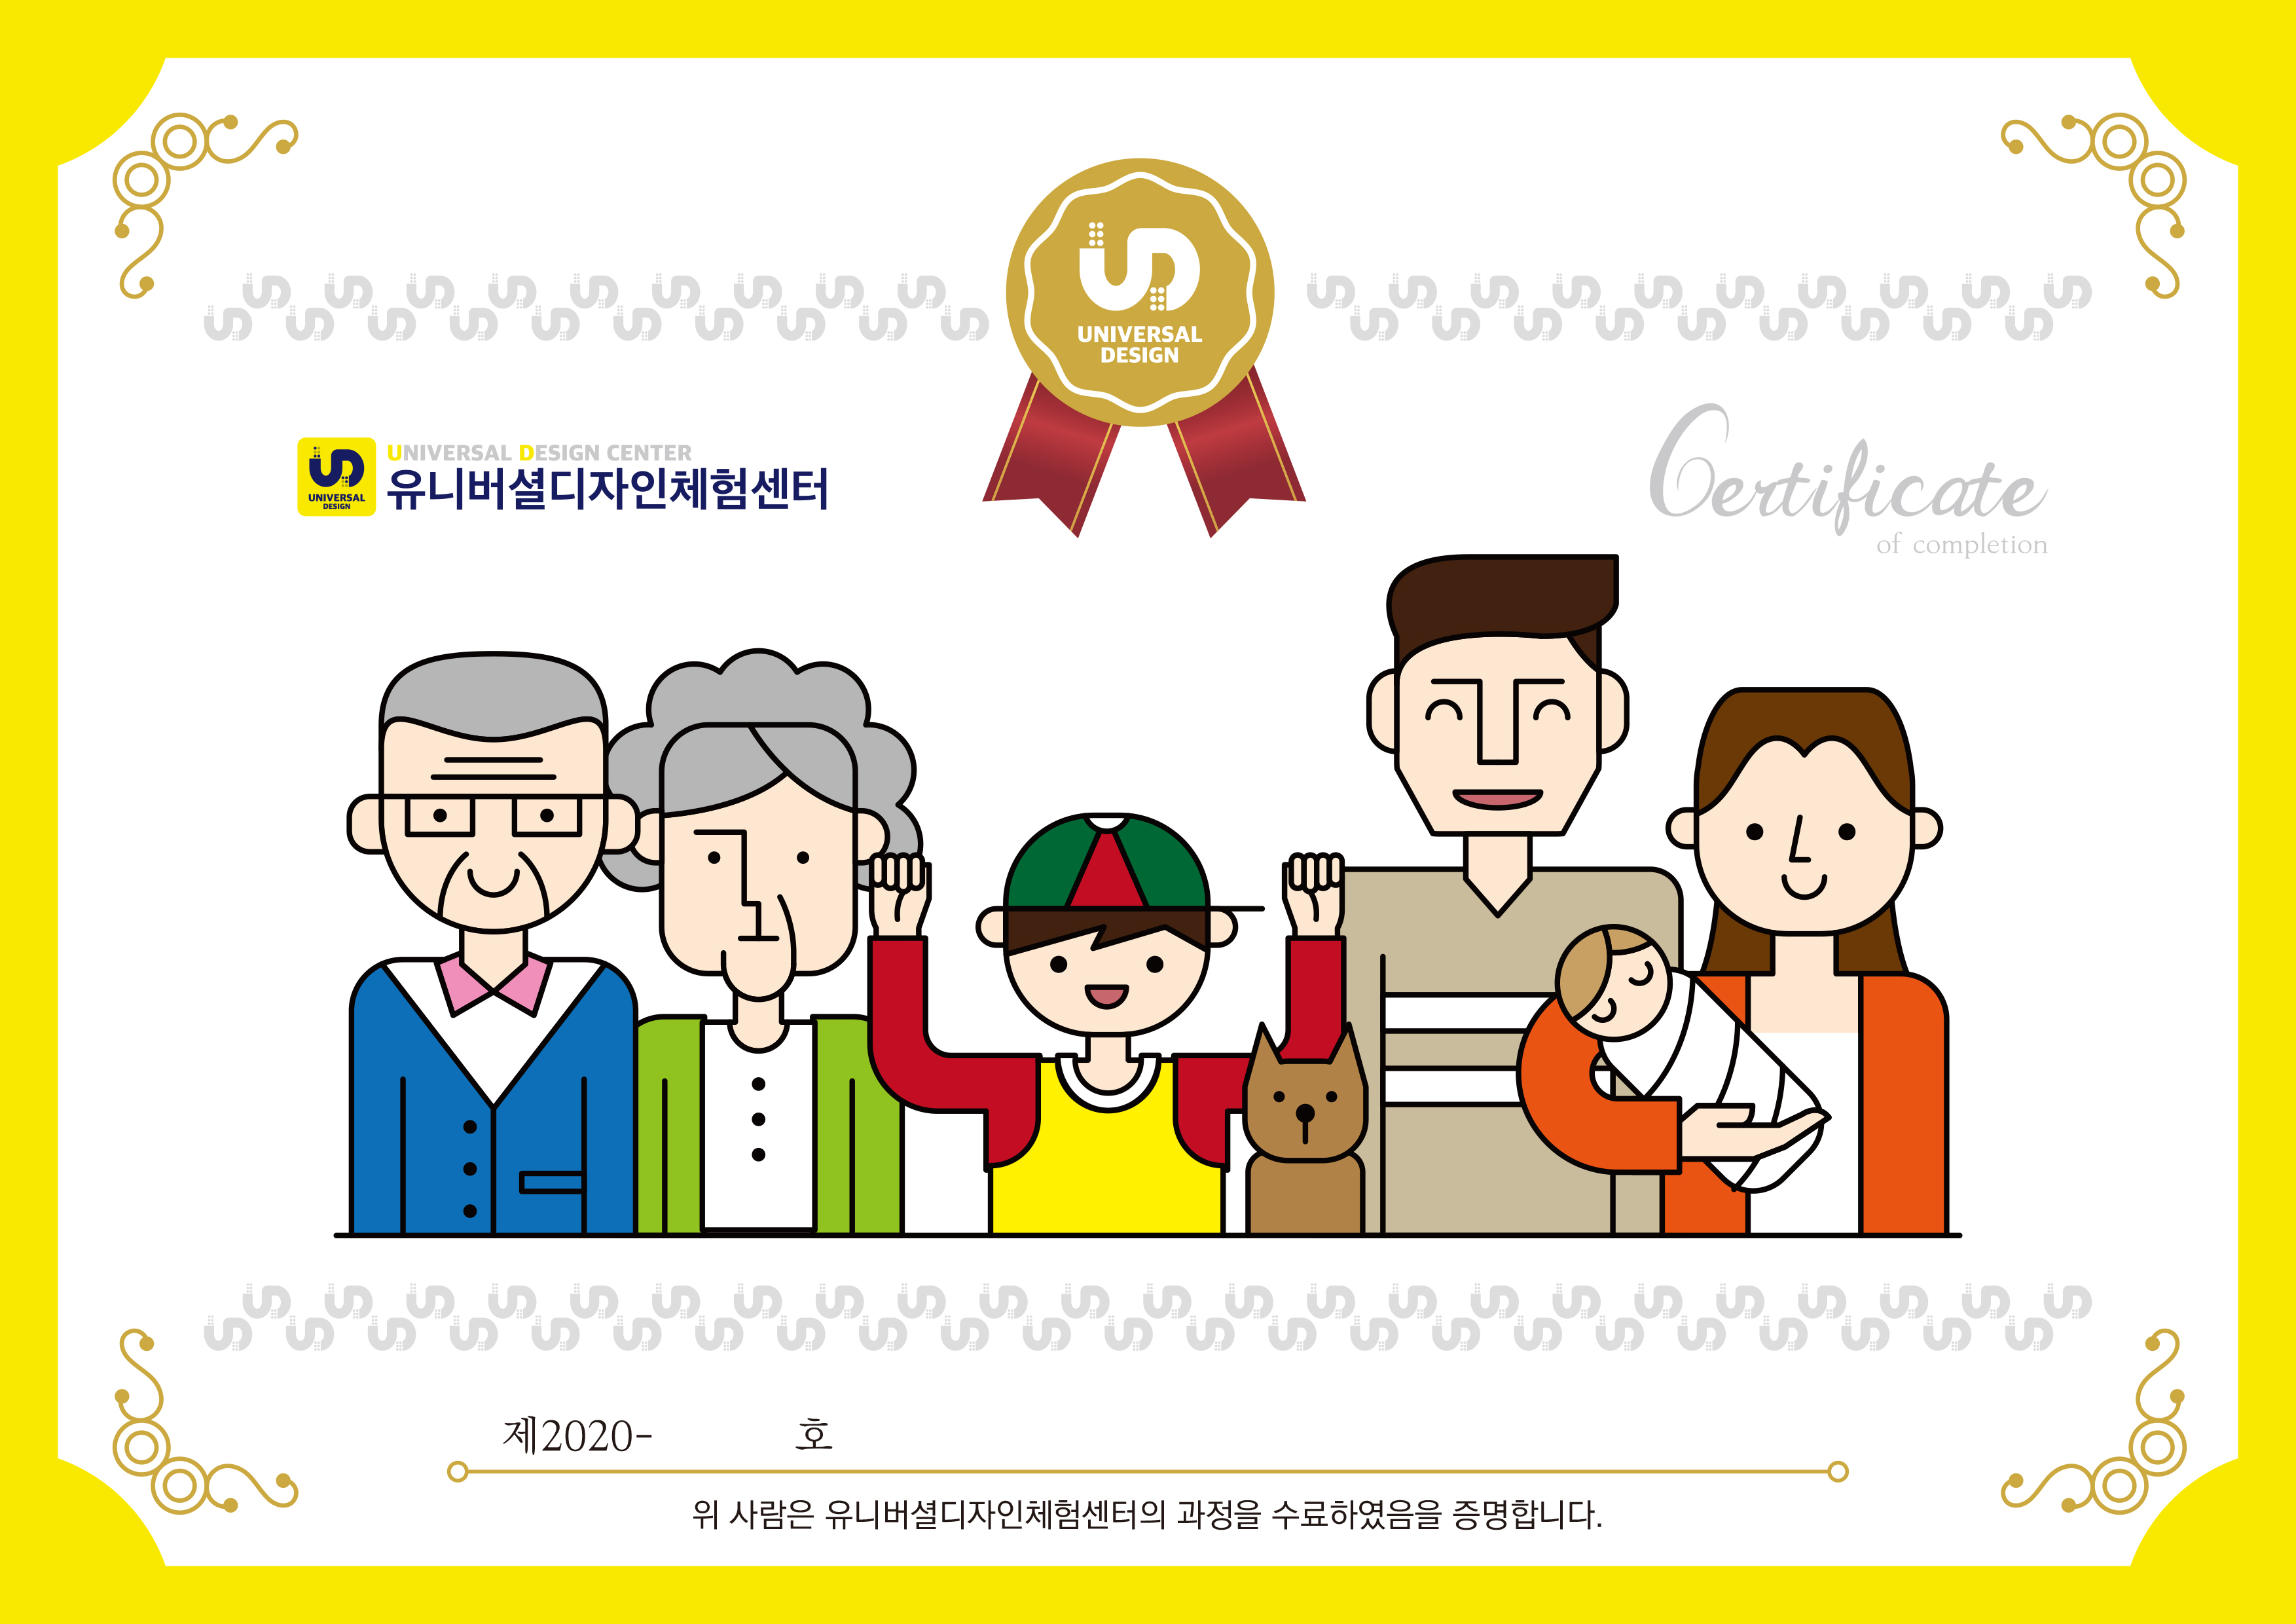 유니버셜디자인체험센터 아동 수료증(certificate )